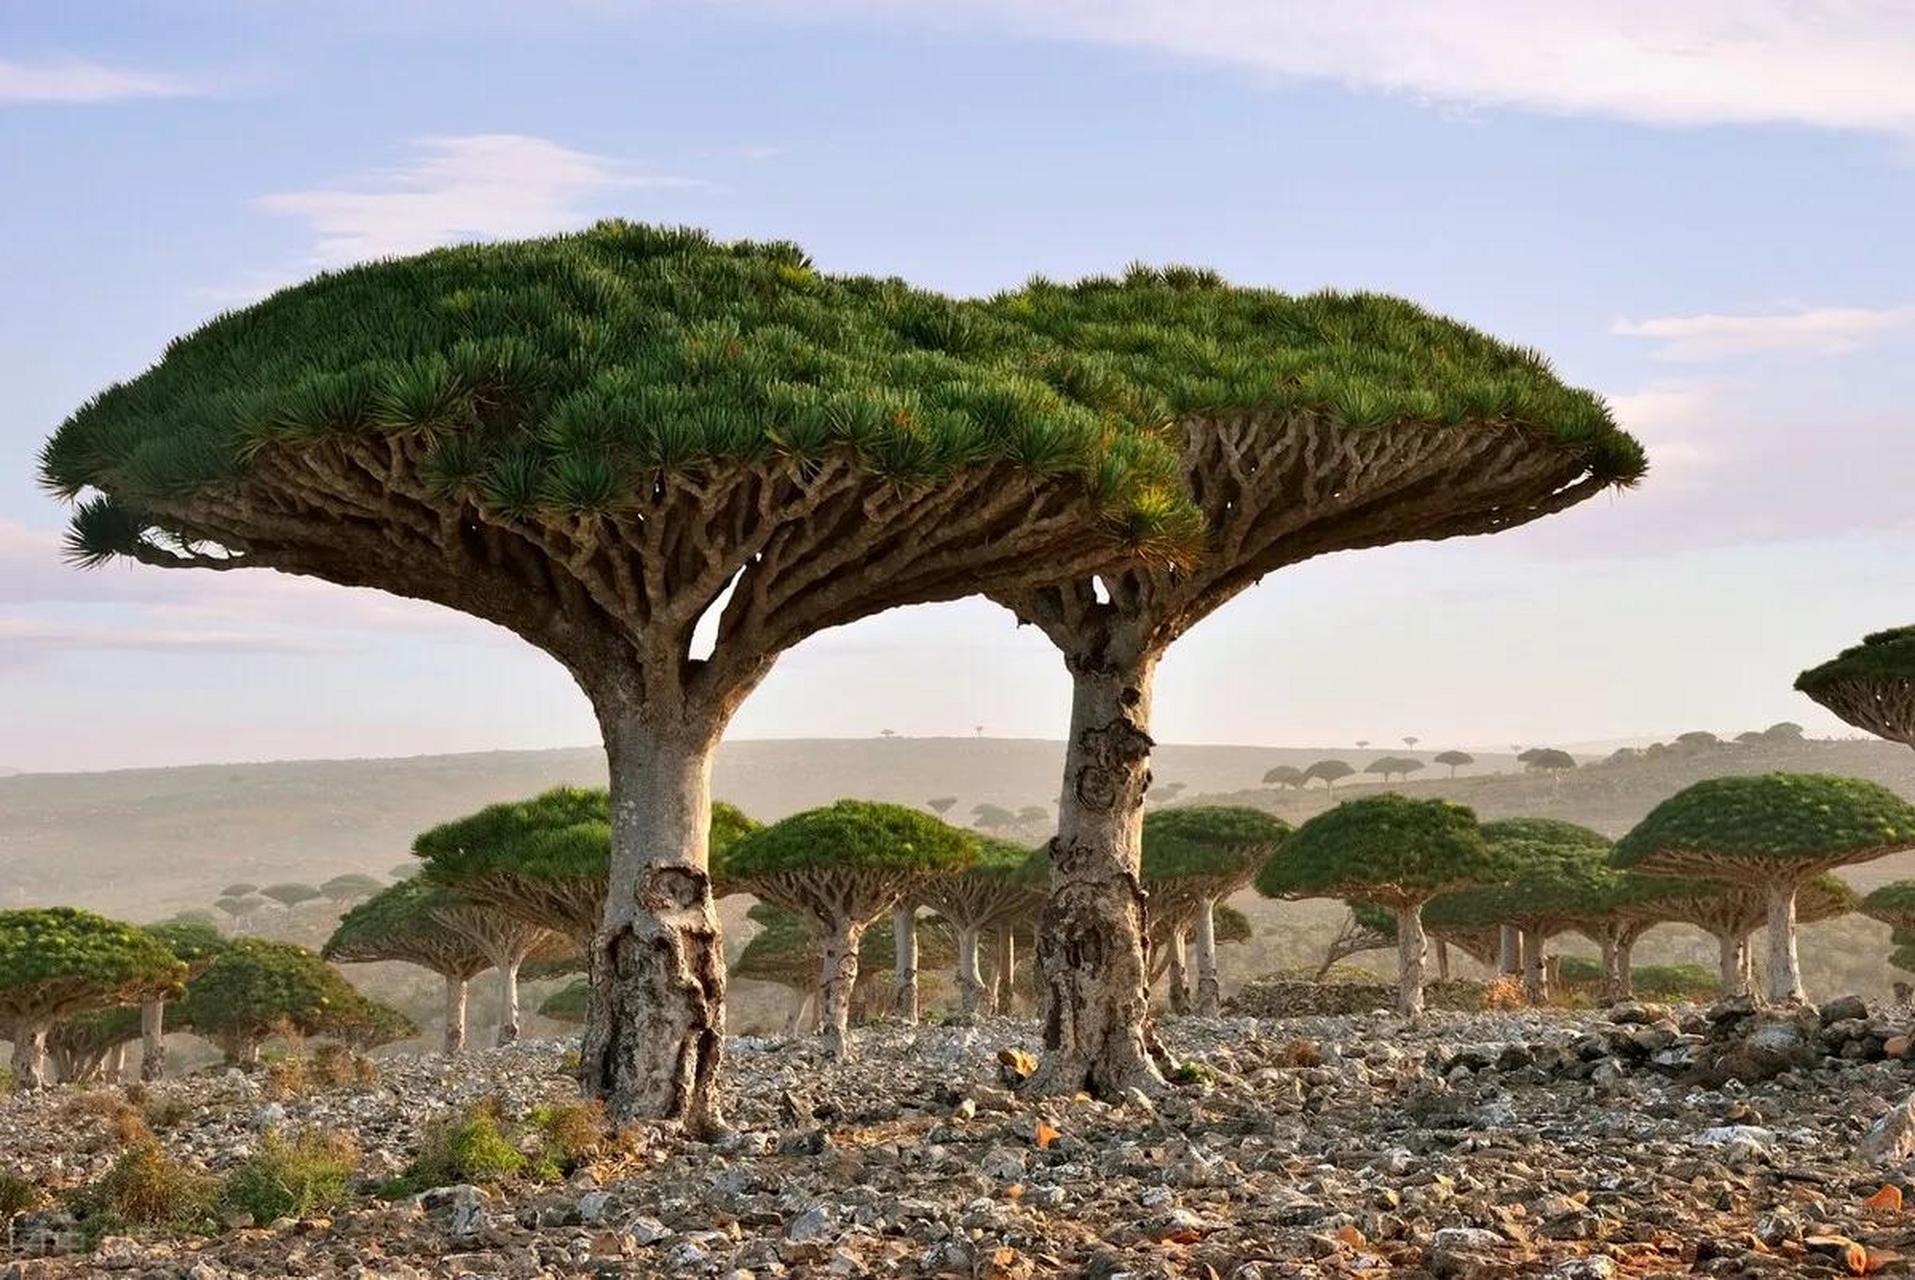 龙血树是一种存在于白垩纪恐龙时代的植物活化石,被誉为植物界的珍宝